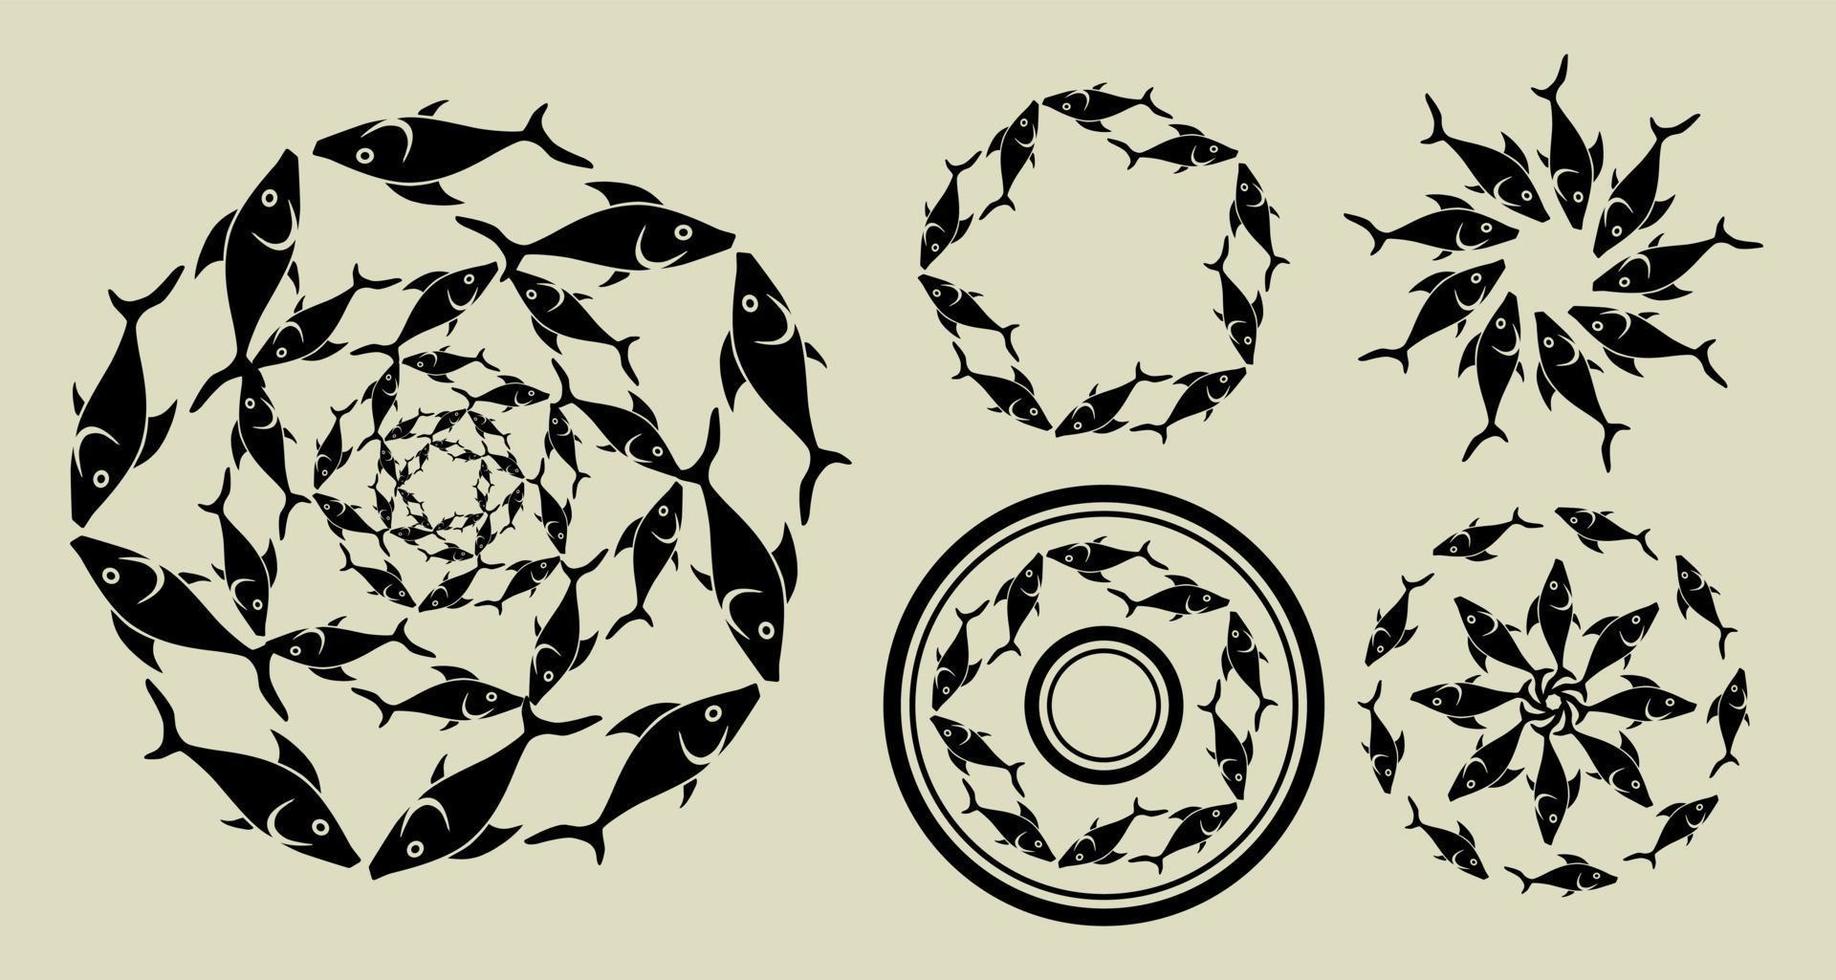 uppsättning av runda ornament av svart fisk i silhuett stil på en vit bakgrund. för utskrift, webbplats design, tatuering. vektor illustration